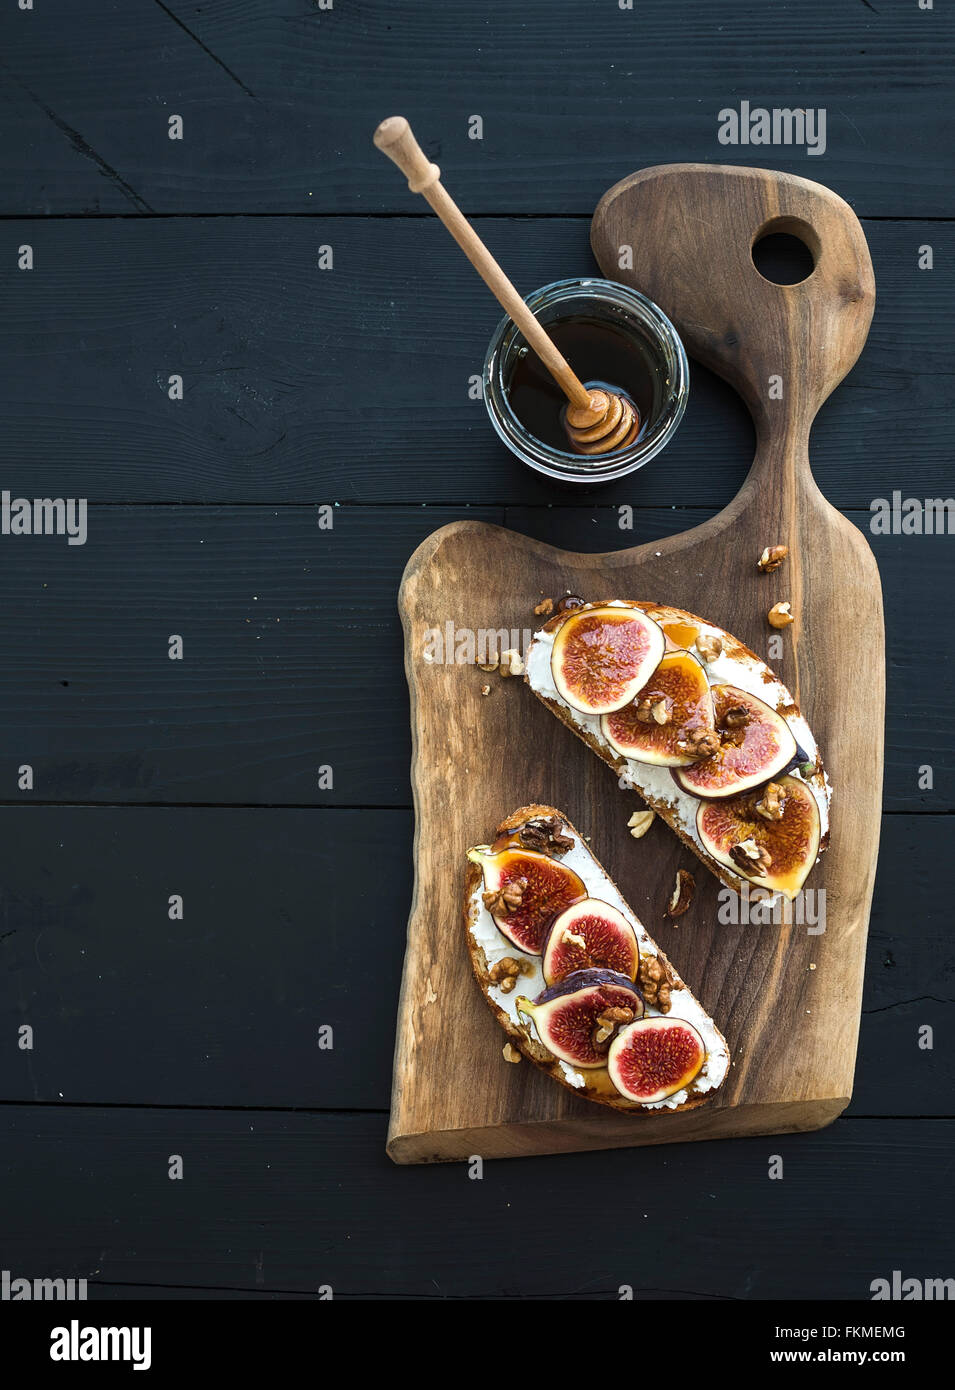 Des sandwichs à la ricotta, figues, noix et miel sur planche de bois rustique sur fond noir, vue du dessus Banque D'Images